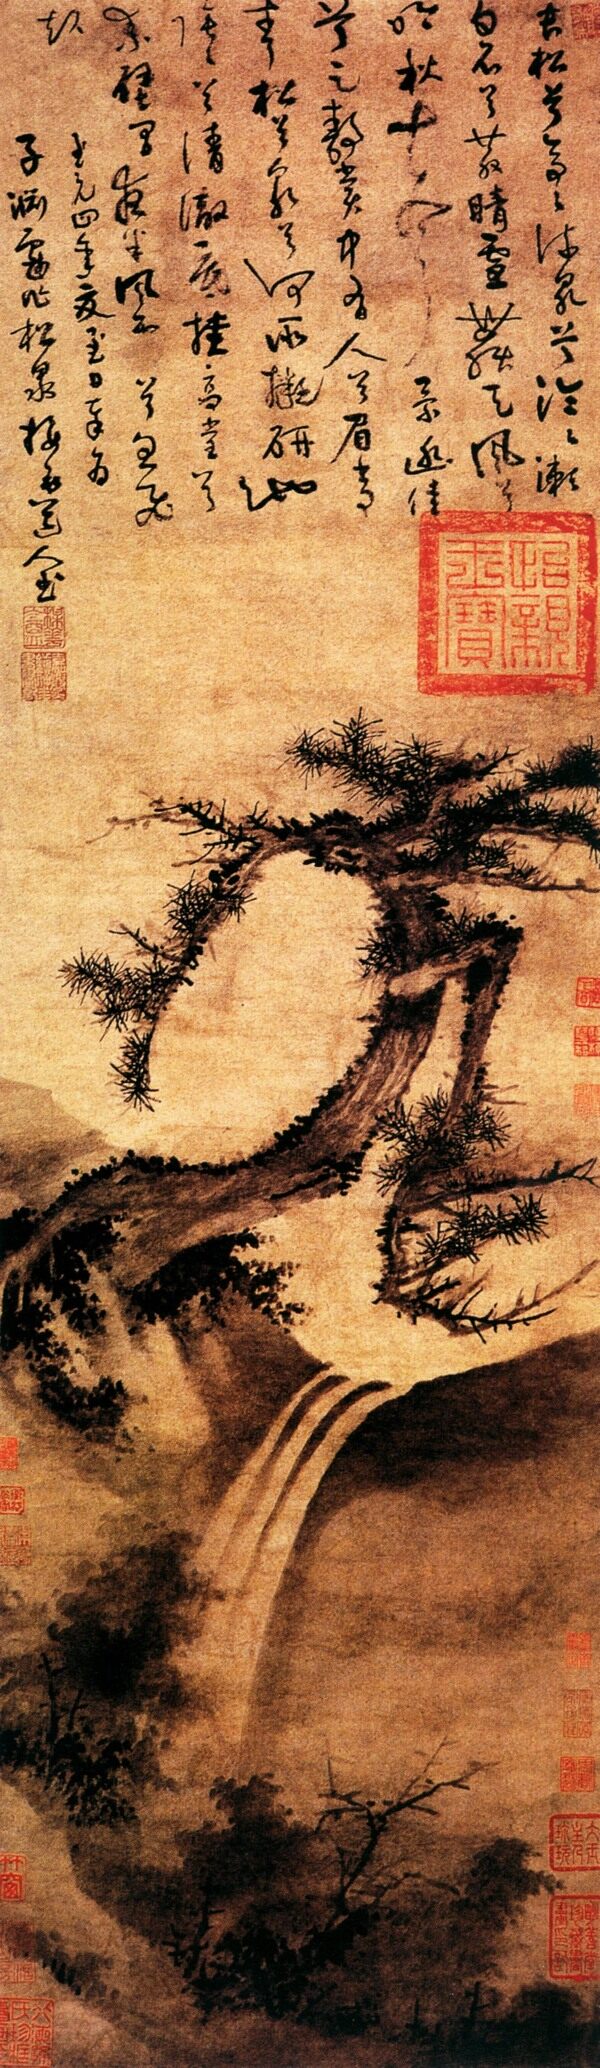 中国传世名画雪松图